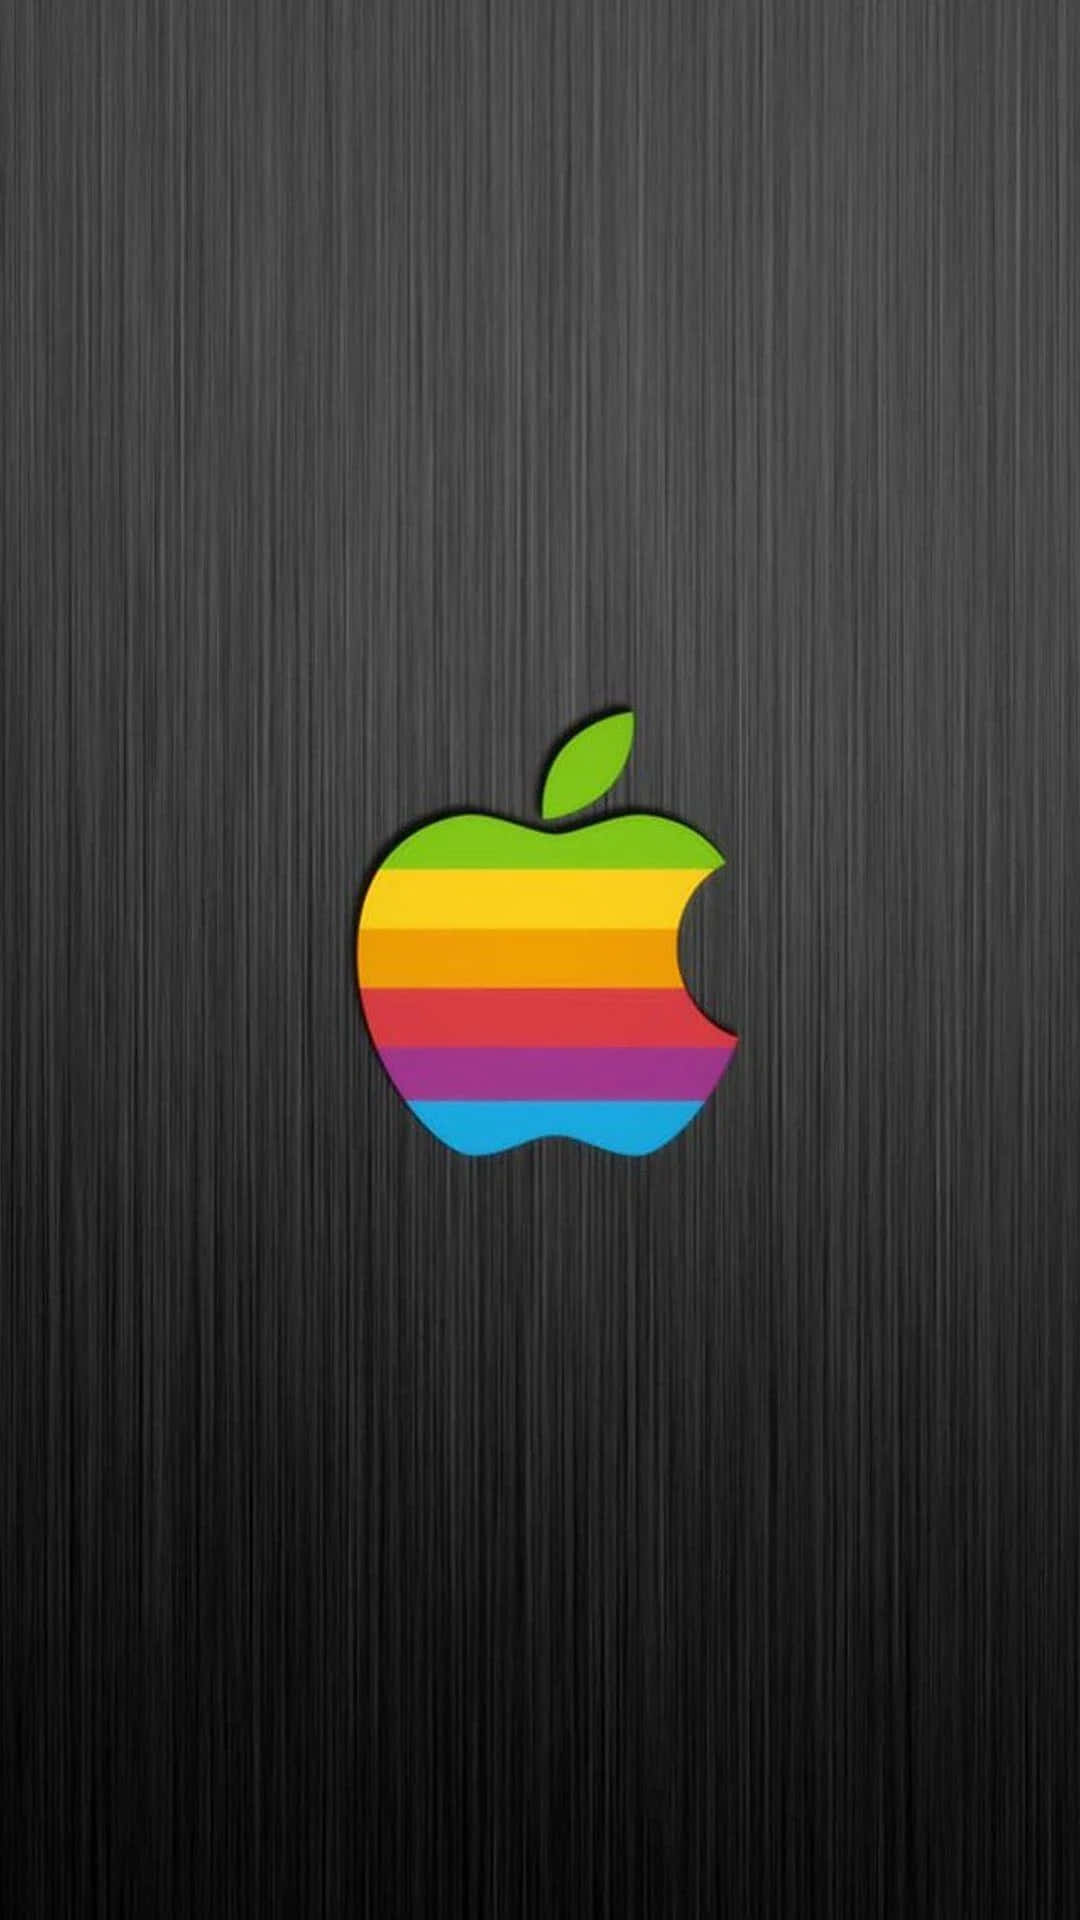 Helleund Farbenfrohe Apple Gadgets, Bei Denen Apfel Früchte Präsentiert Werden.